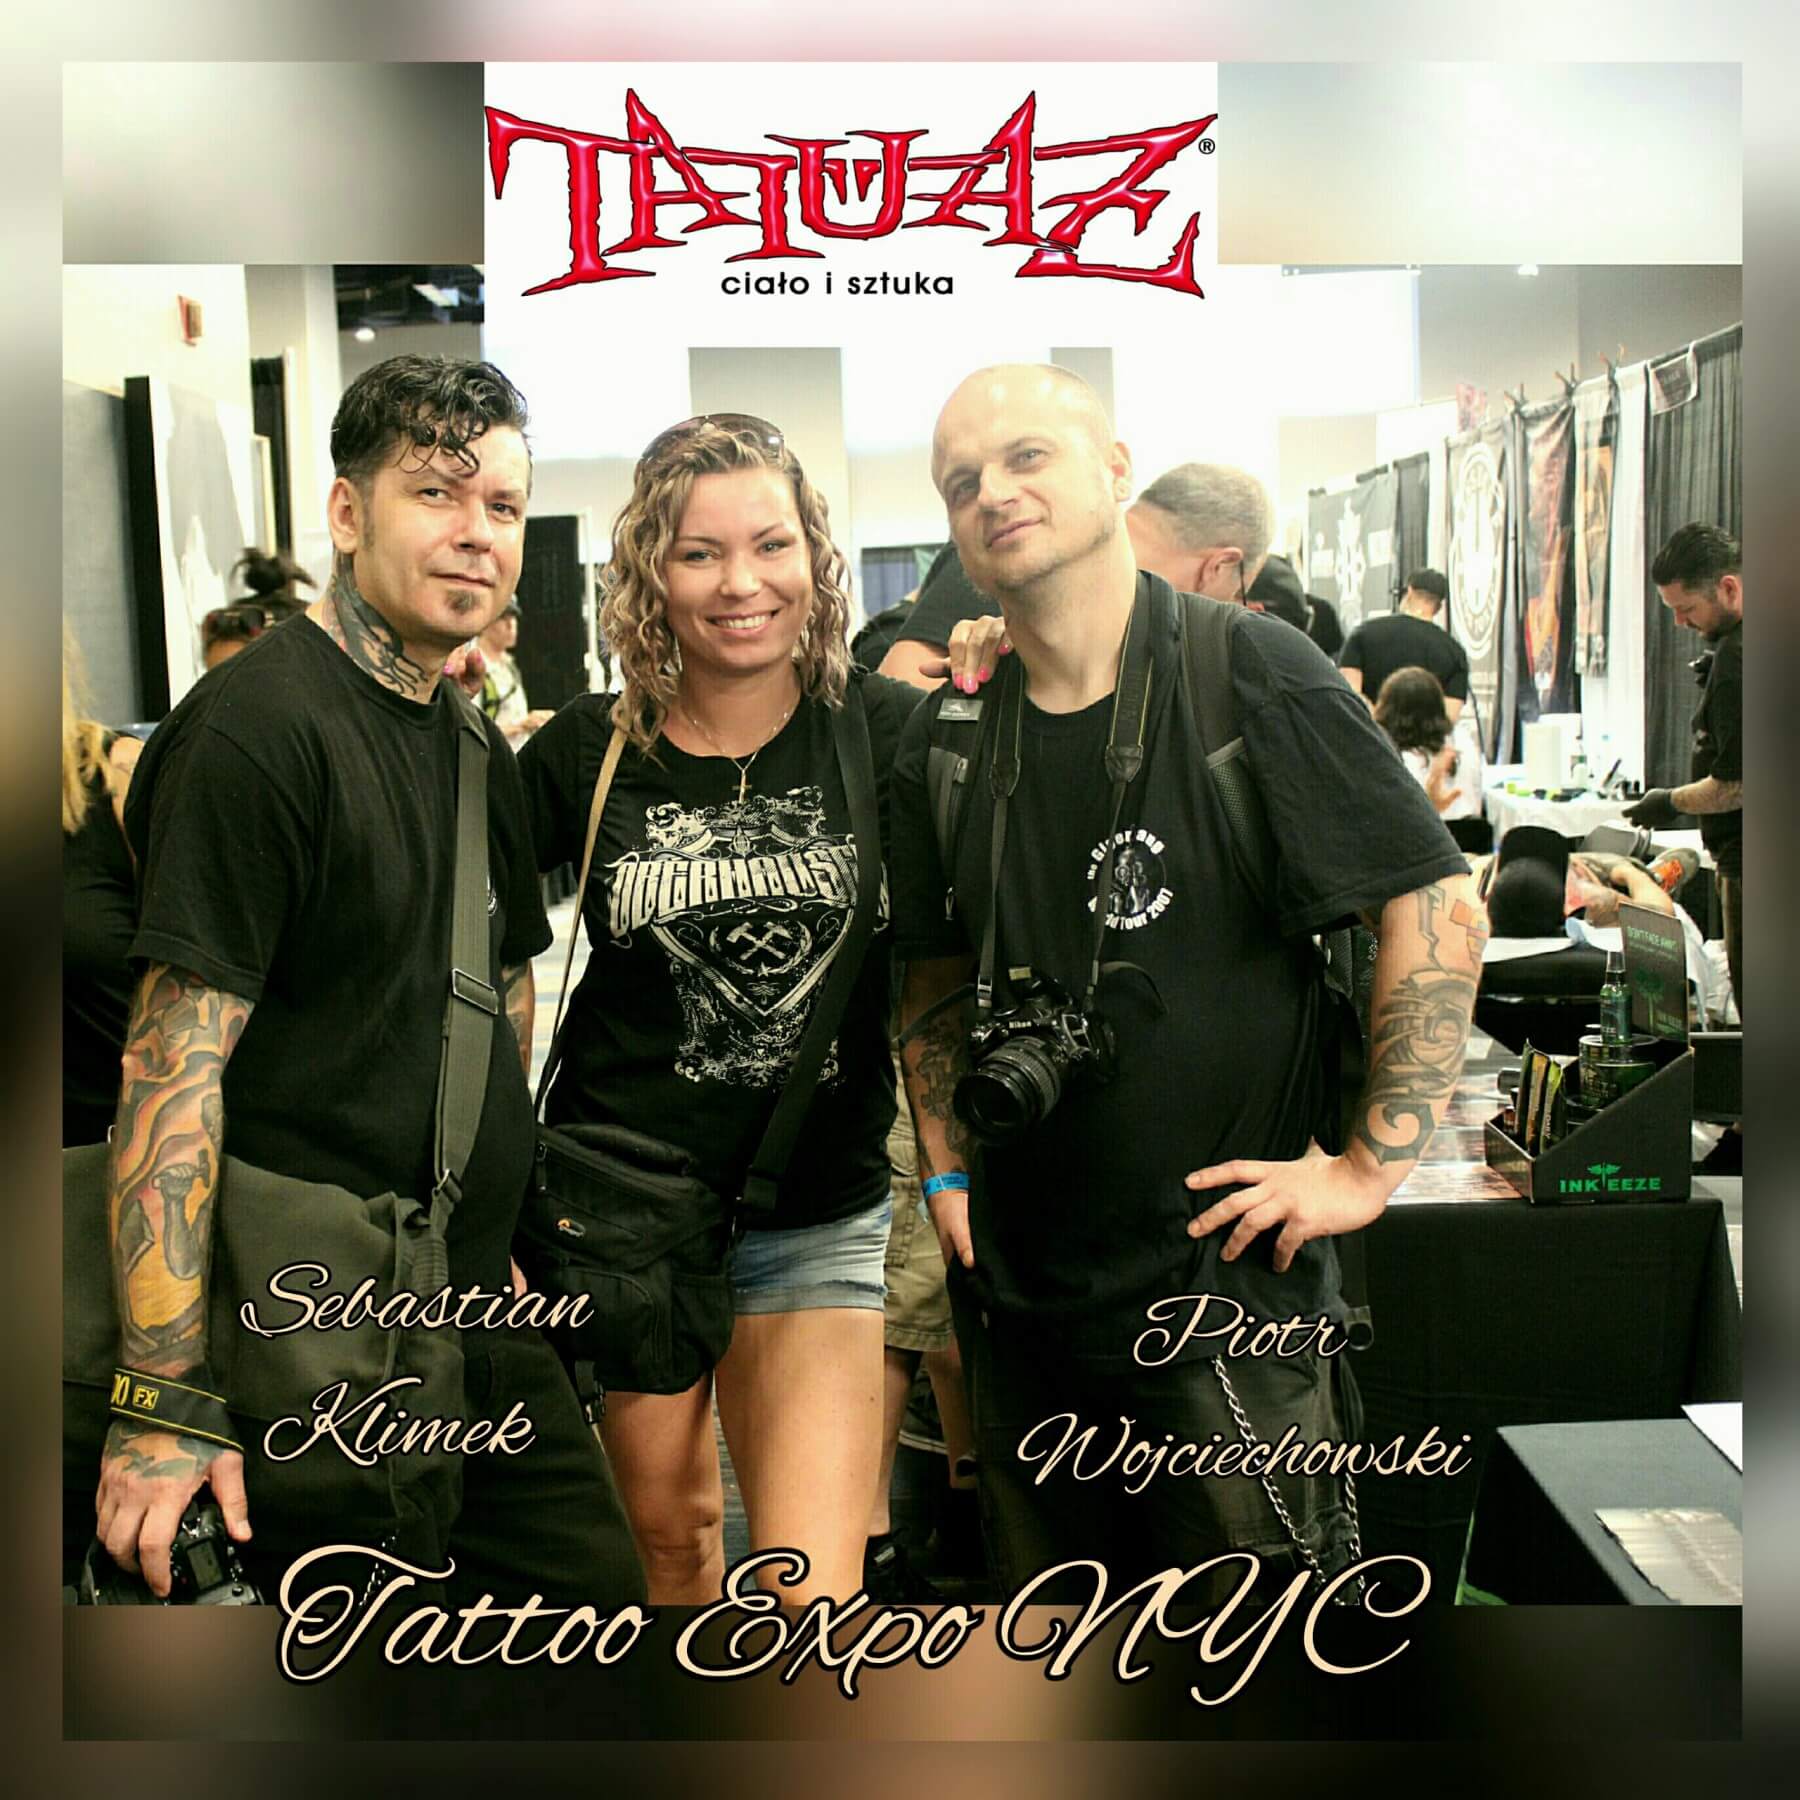 Tattoo Studio Danzig